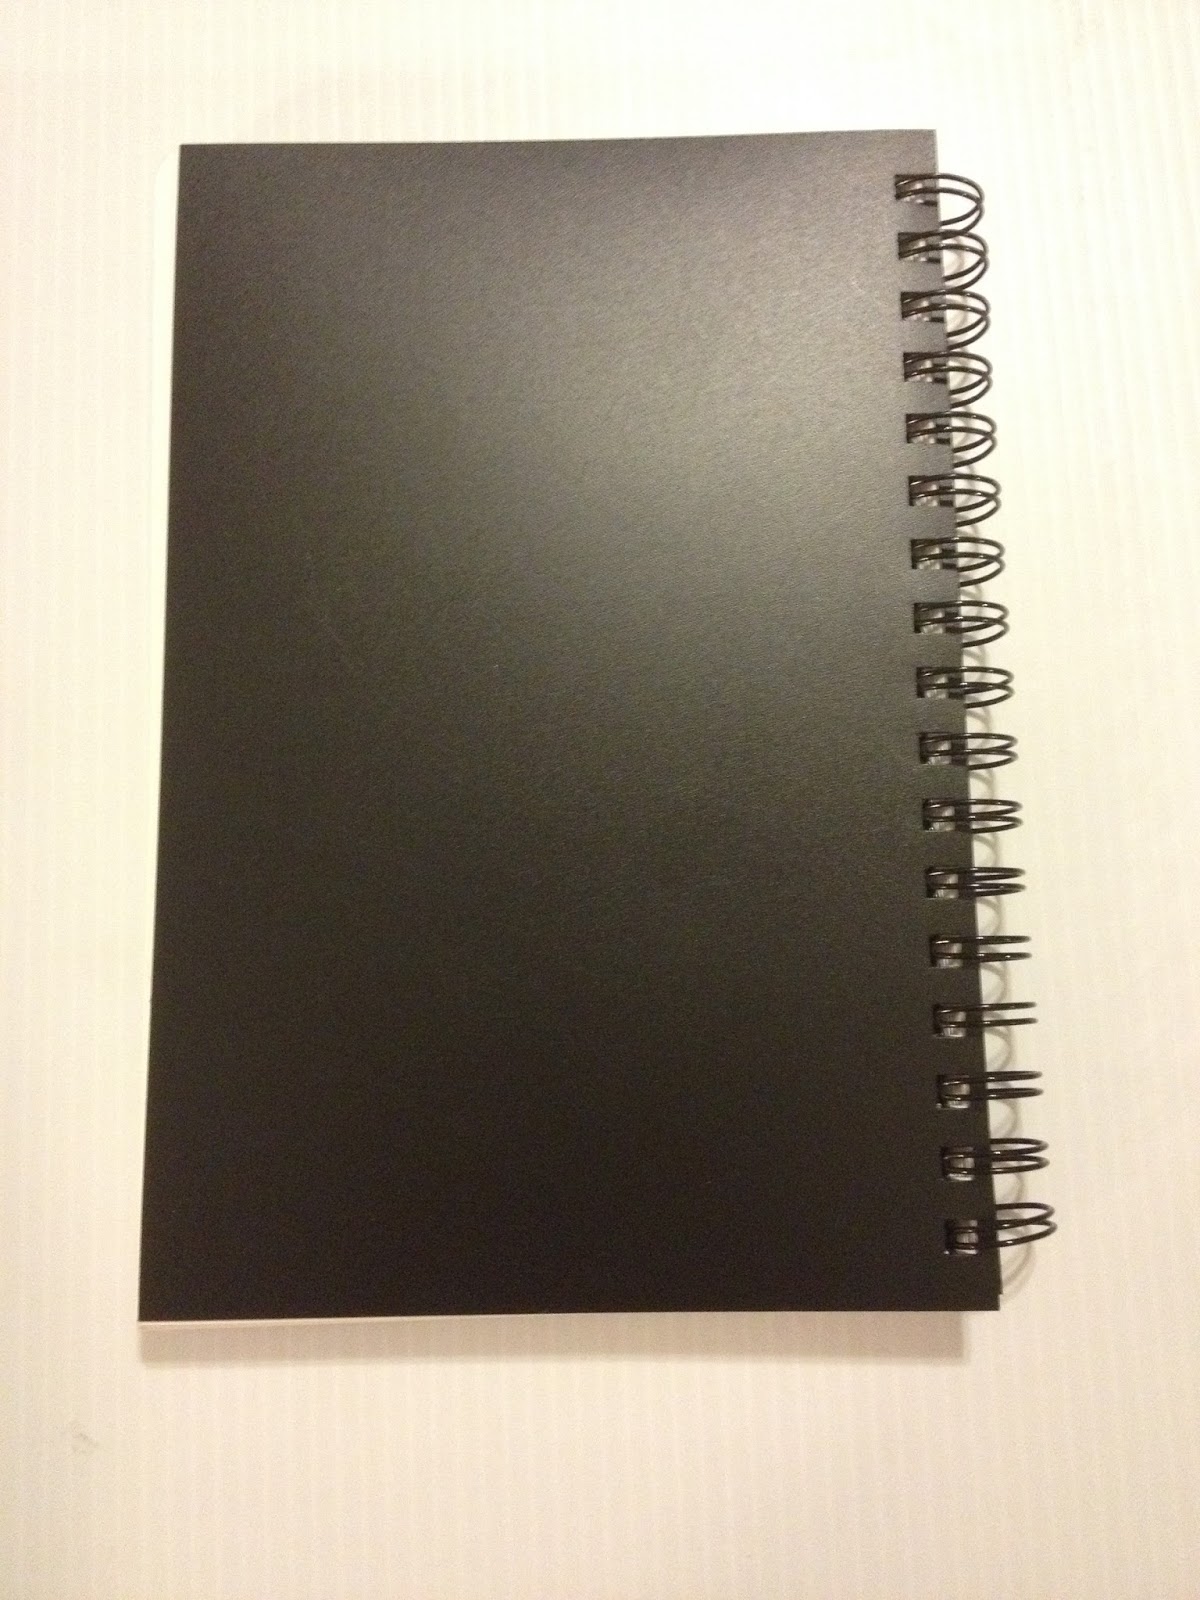 3 Ea) Wirebound Sketchbook 9x12  Sketch book, Sketch paper, Sketch pad